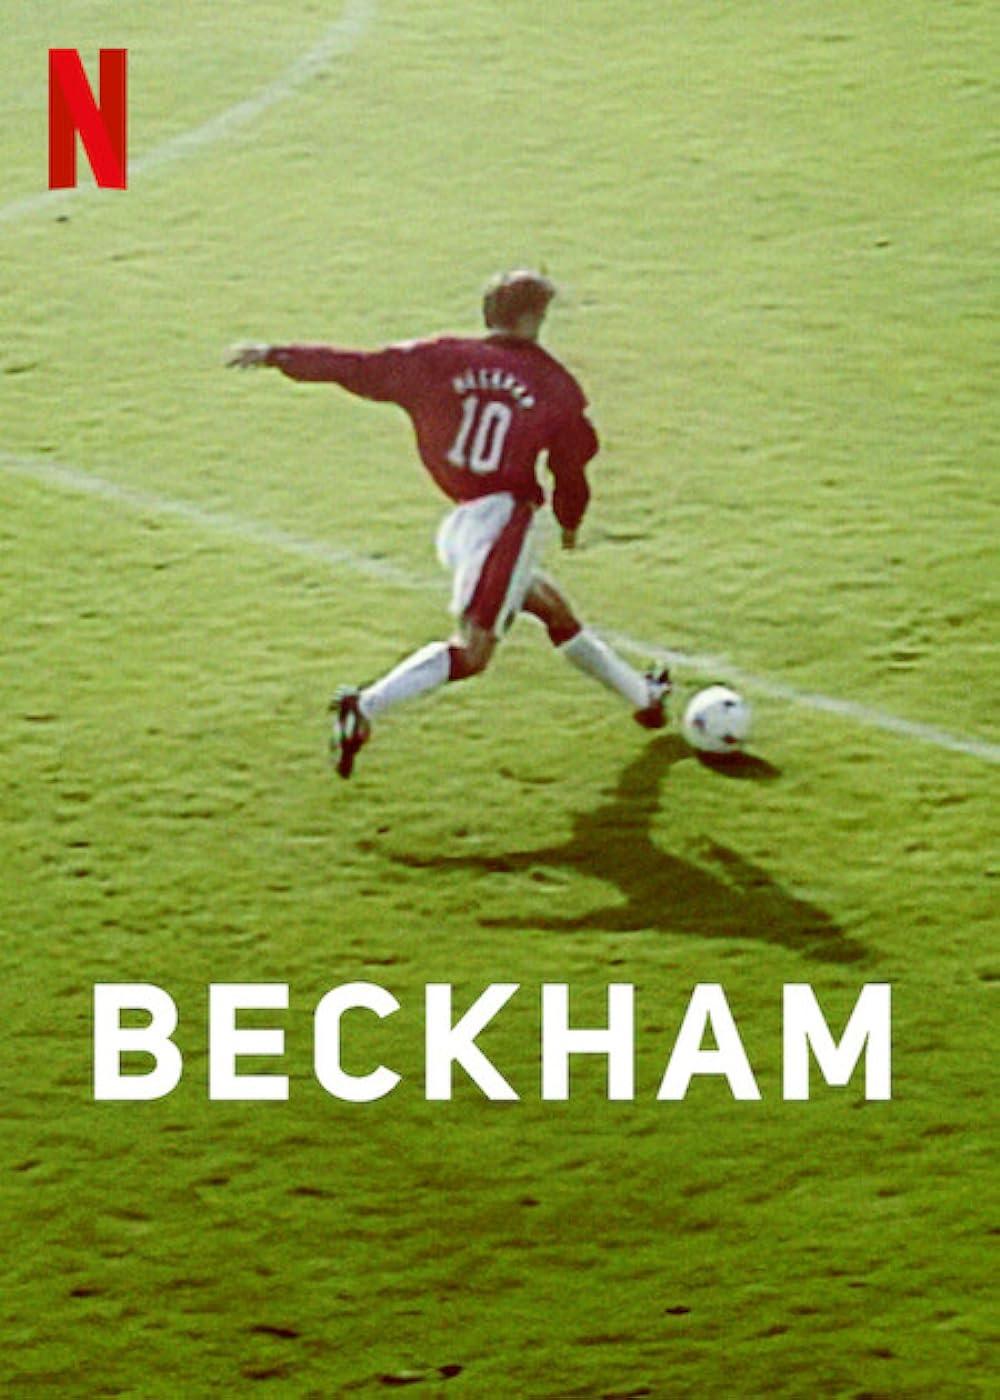 Beckham (October 4) - Streaming on NetflixOn October 4, Netflix presents 